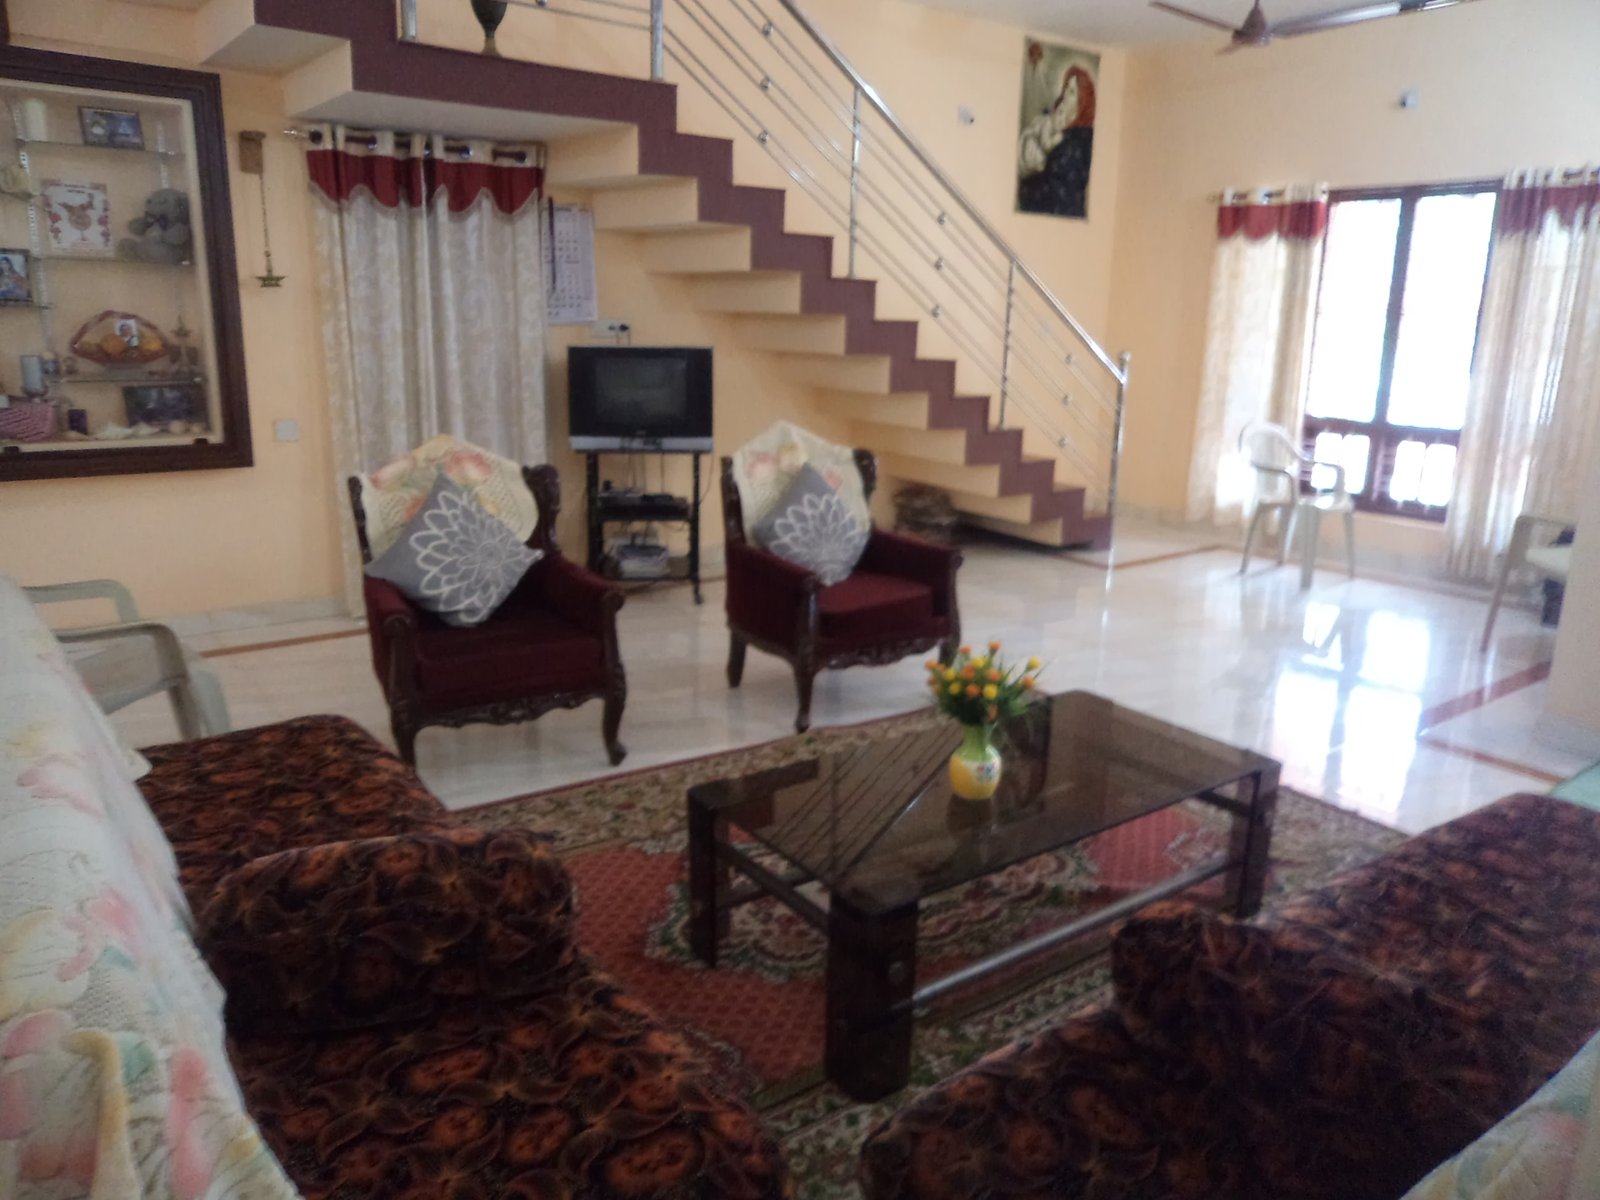 4 bedroom villa holiday rental in kottayam